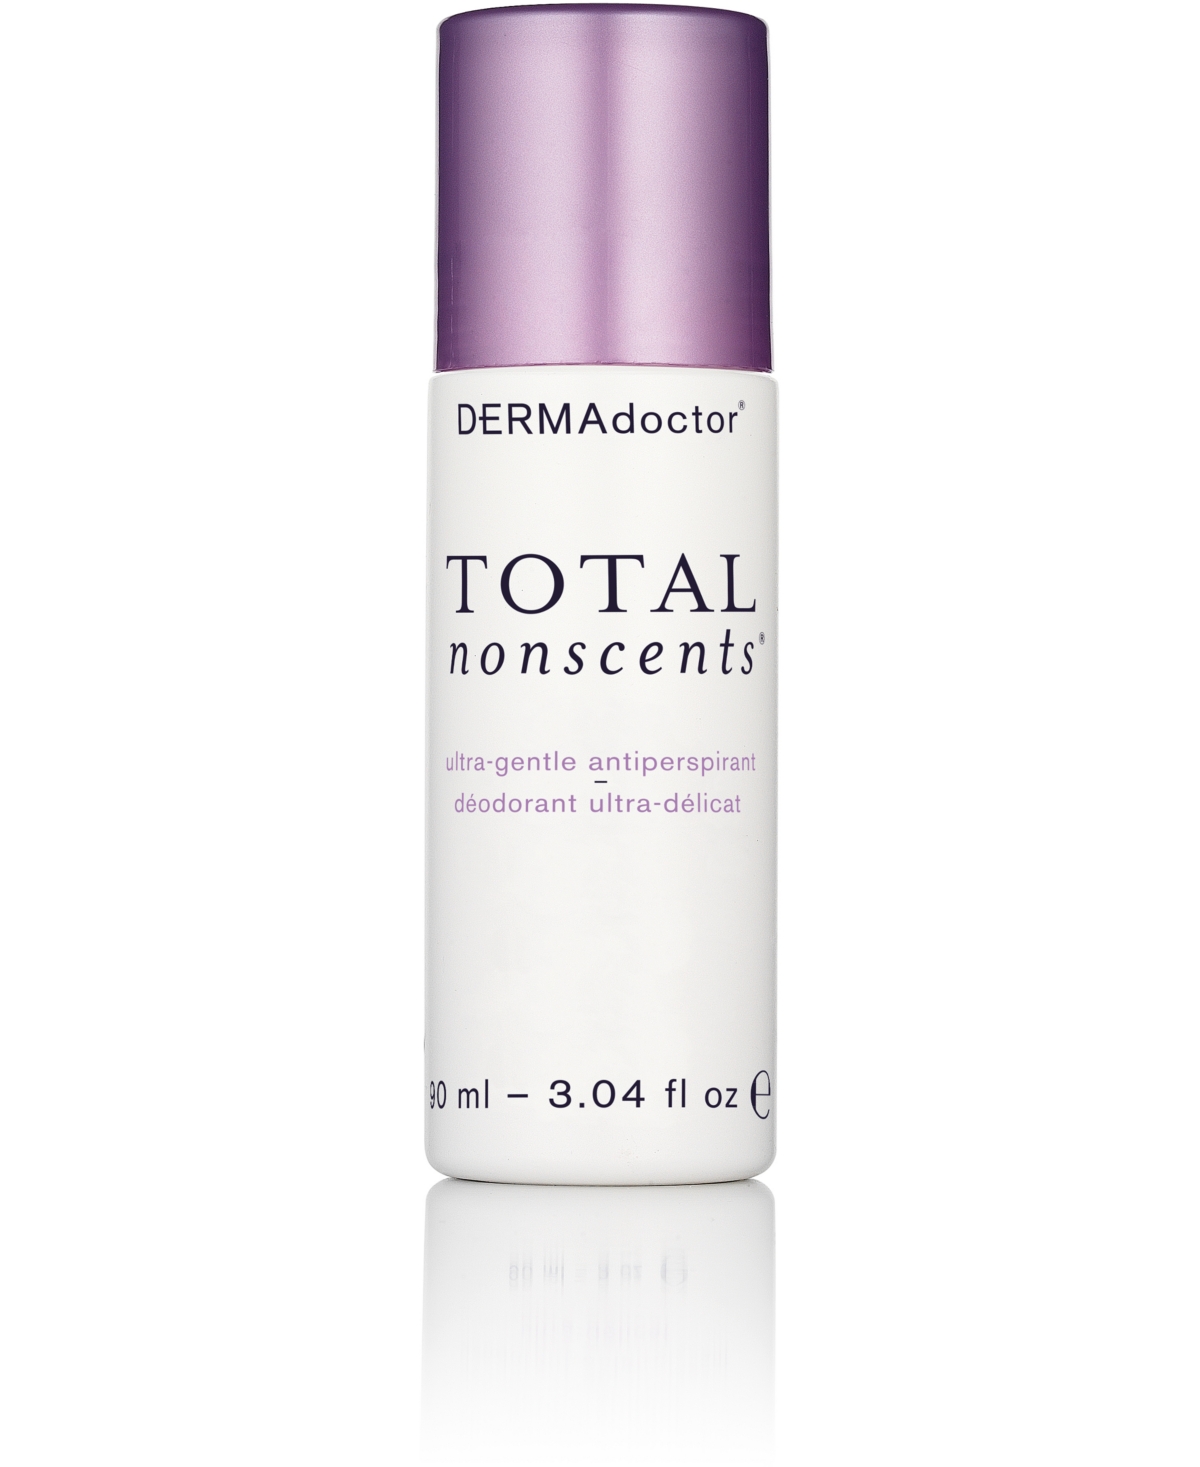 DERMAdoctor Total Nonscents Ultra-Gentle Antiperspirant, 3.04-oz.